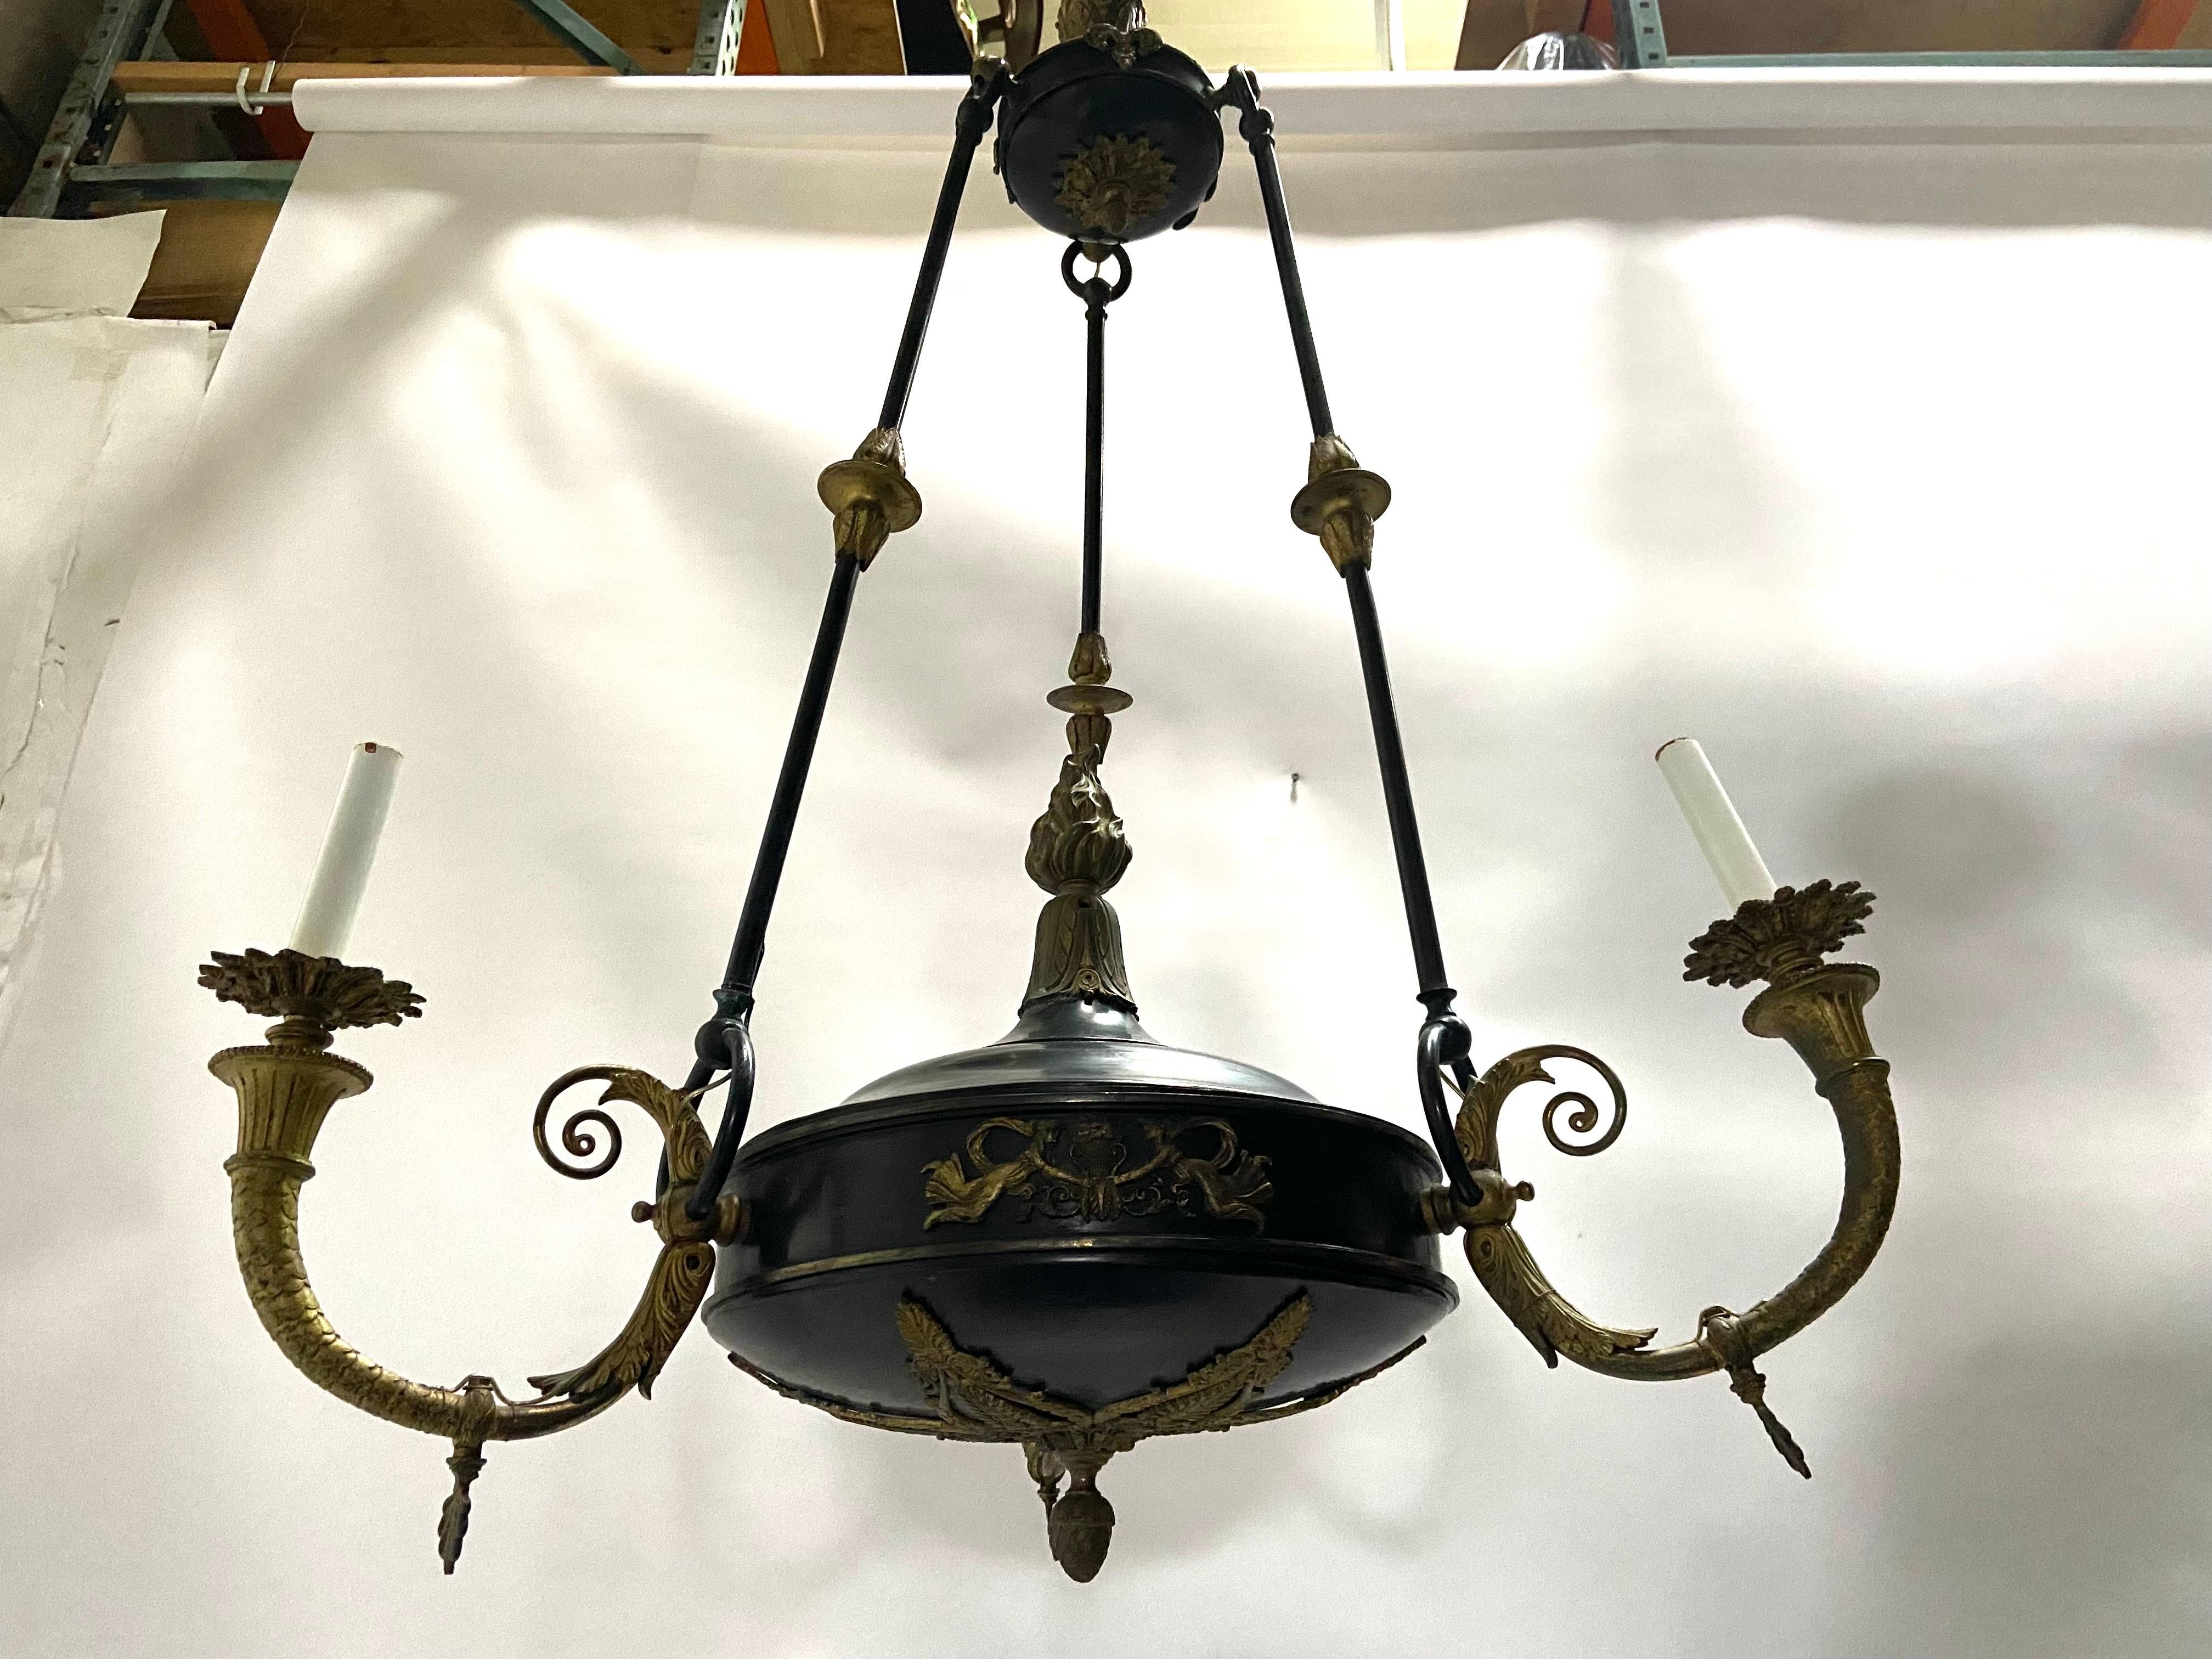 Antiker dreiflammiger Kronleuchter aus Bronze im französischen Empire-Stil (ca. 1900-1920). An der Unterseite des Kronleuchters befindet sich ein sehr detailliertes, stilisiertes, durchbrochenes Akanthusblatt-Ornament mit einem herabfallenden